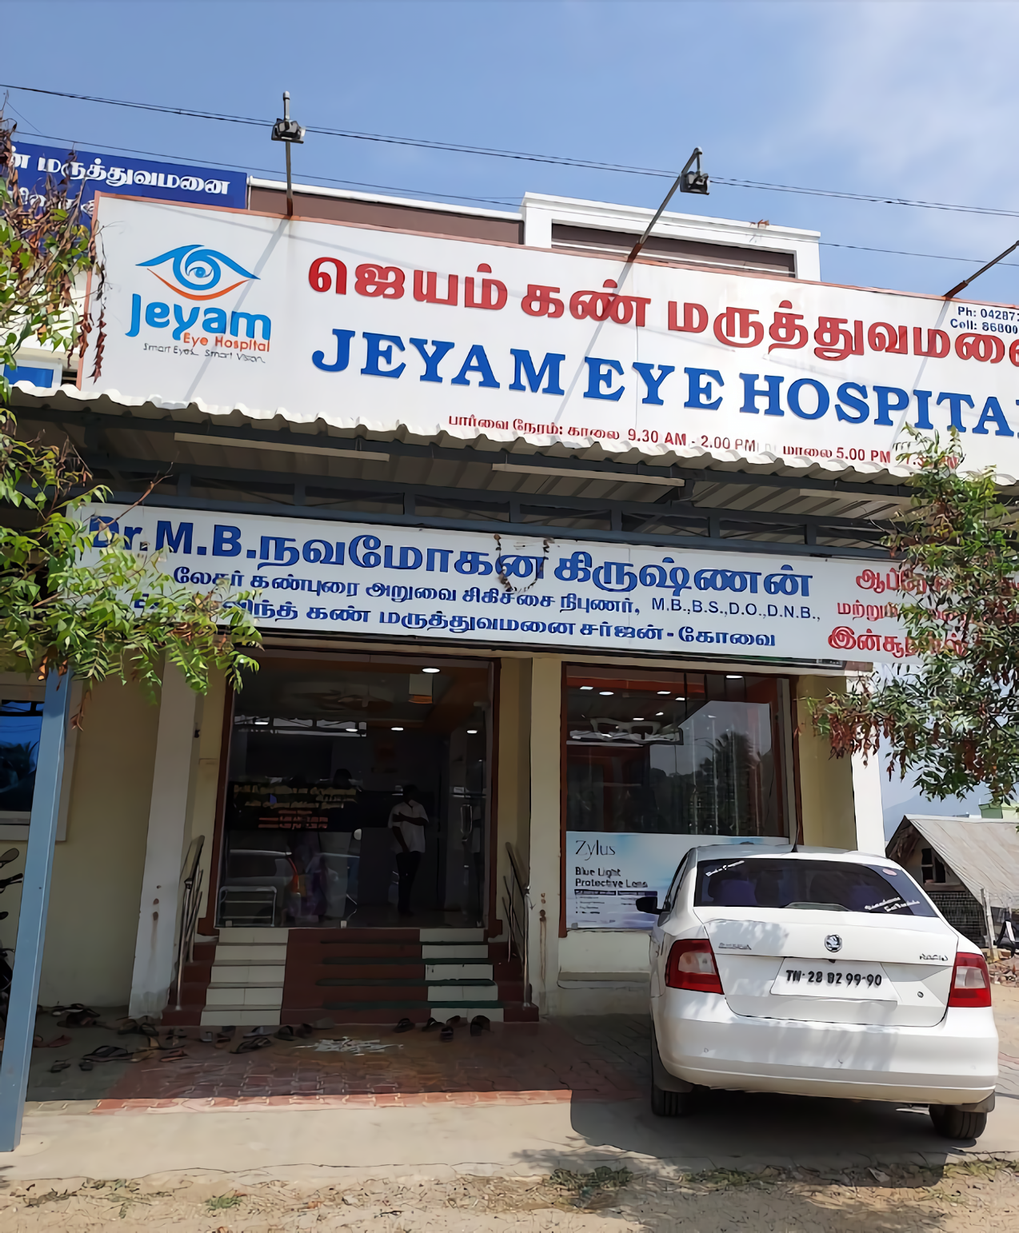 Jeyam Eye Hospital